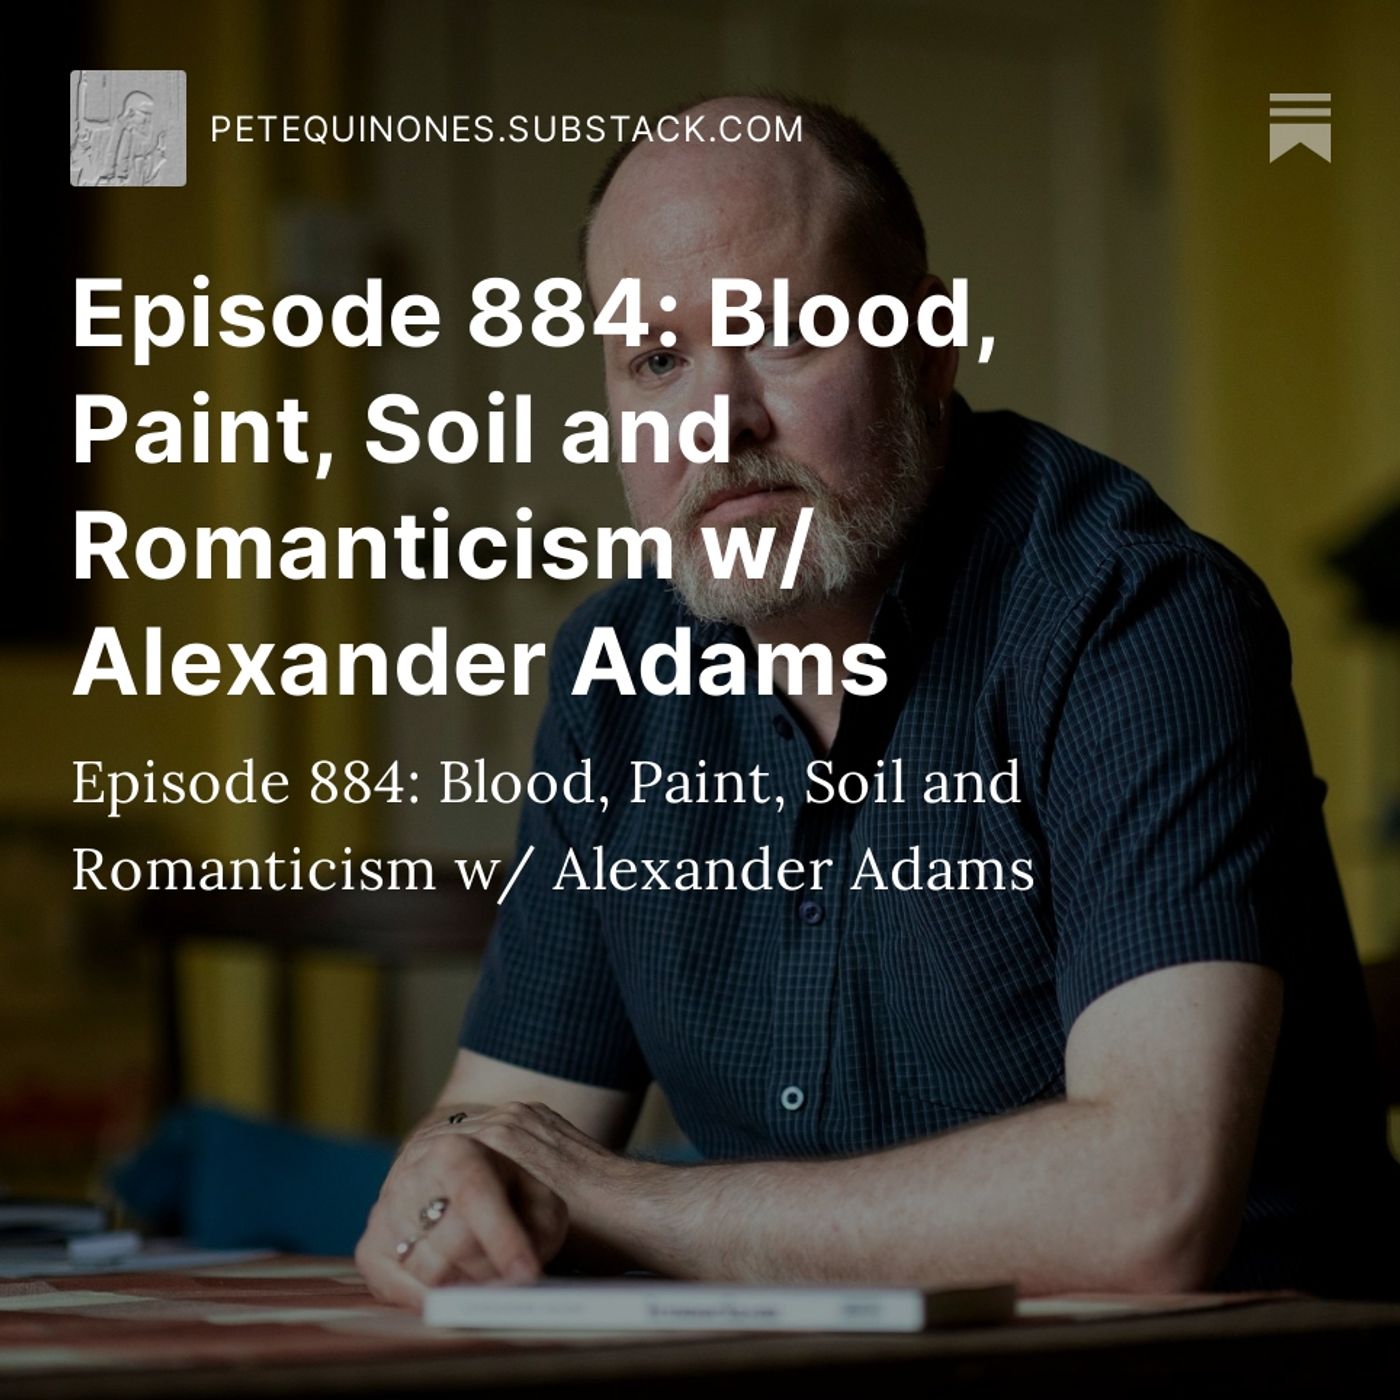 Episode 884: Blood, Paint, Soil and Romanticism w/ Alexander Adams